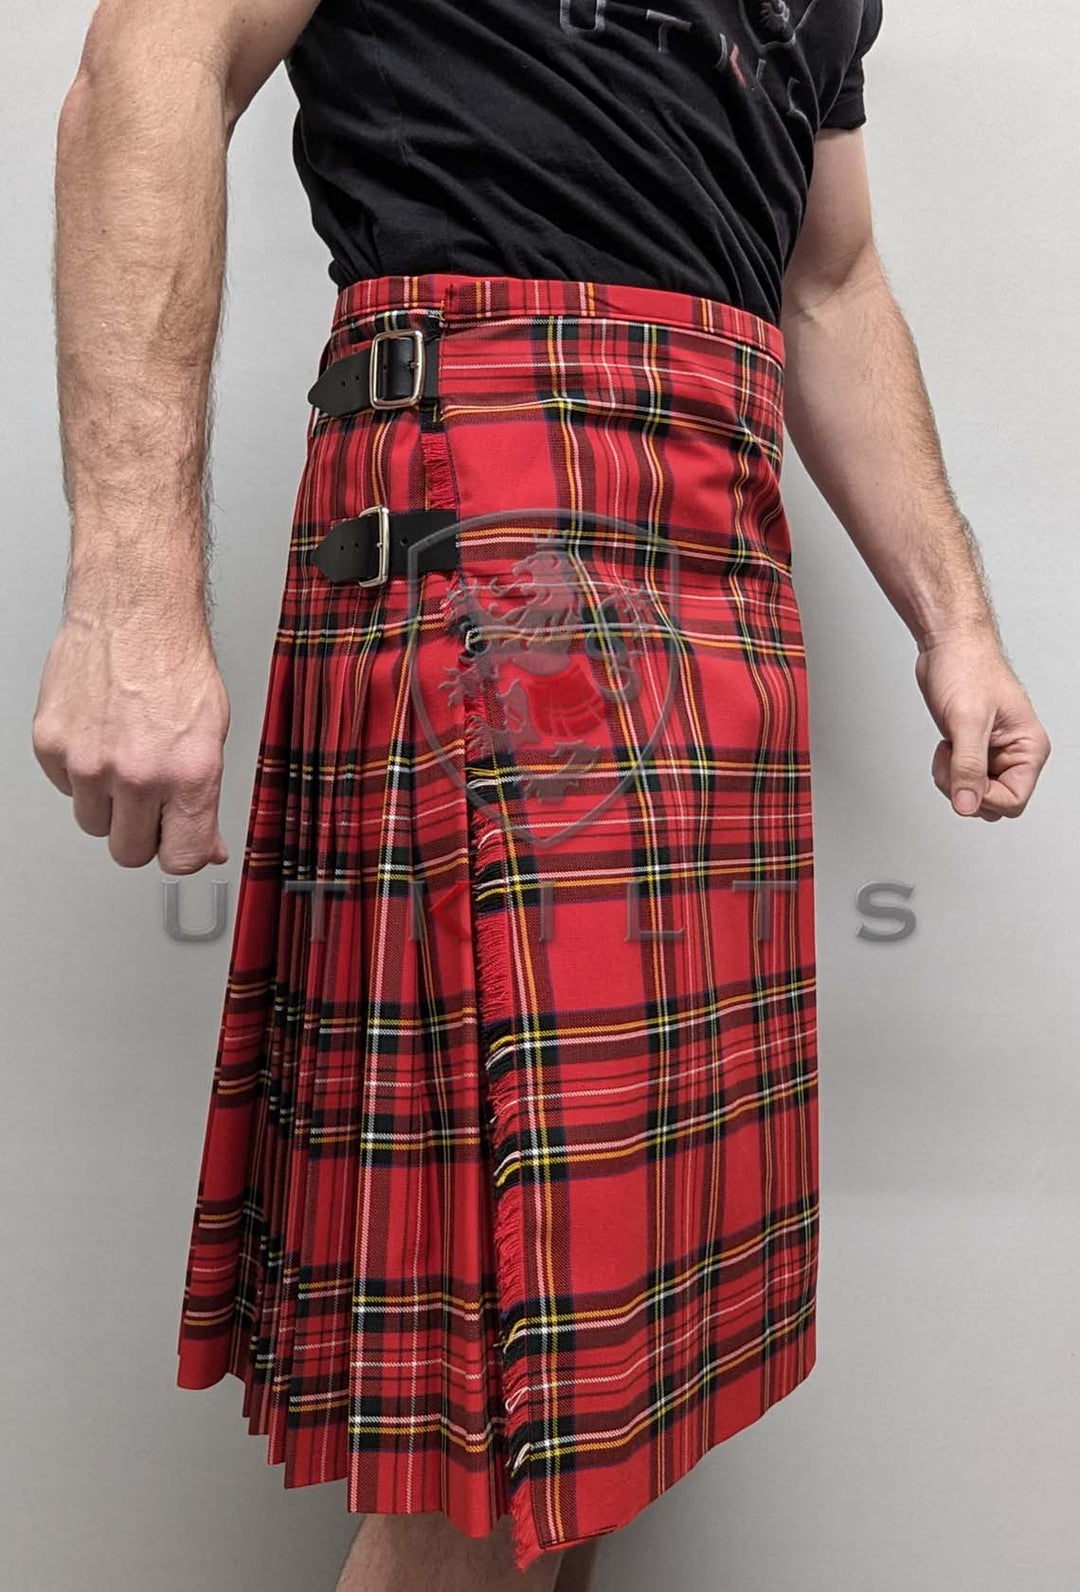 Royal Stewart Tartan Utility Kilt For Sale